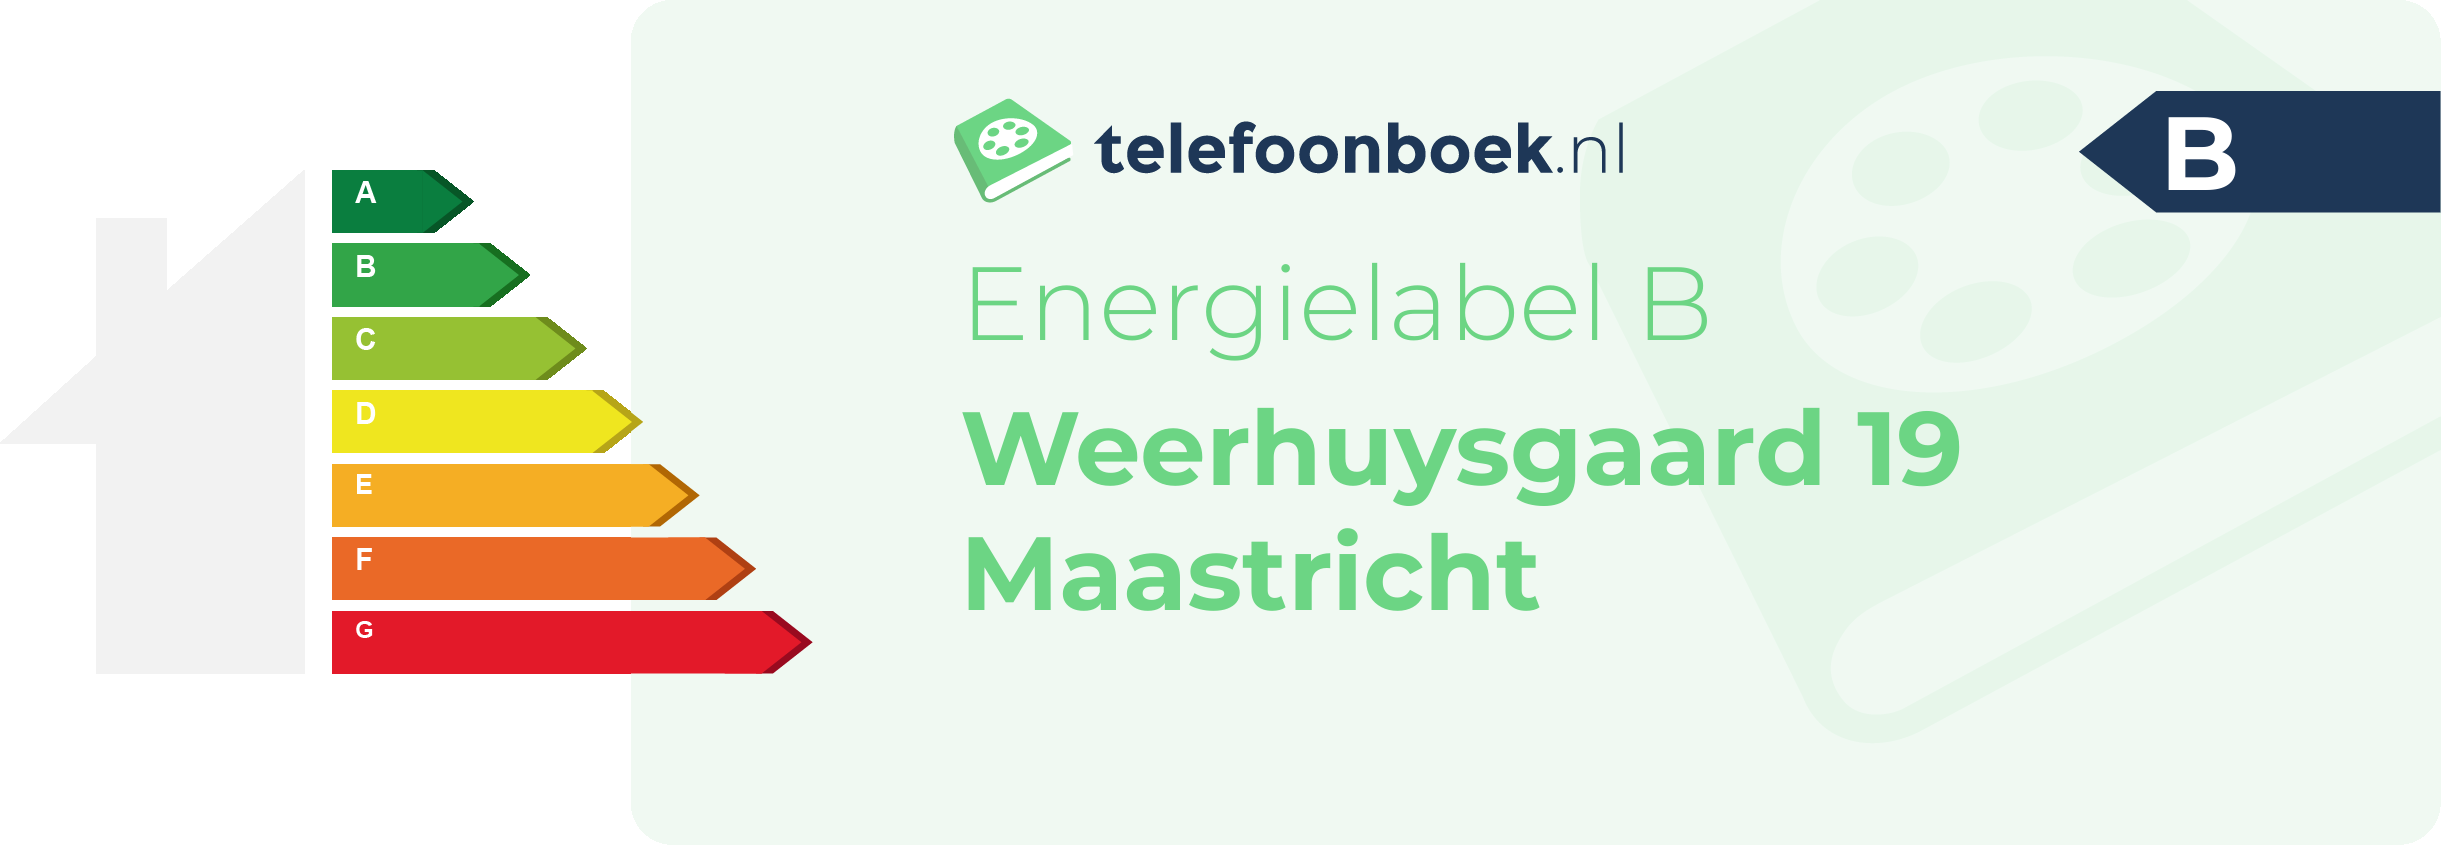 Energielabel Weerhuysgaard 19 Maastricht